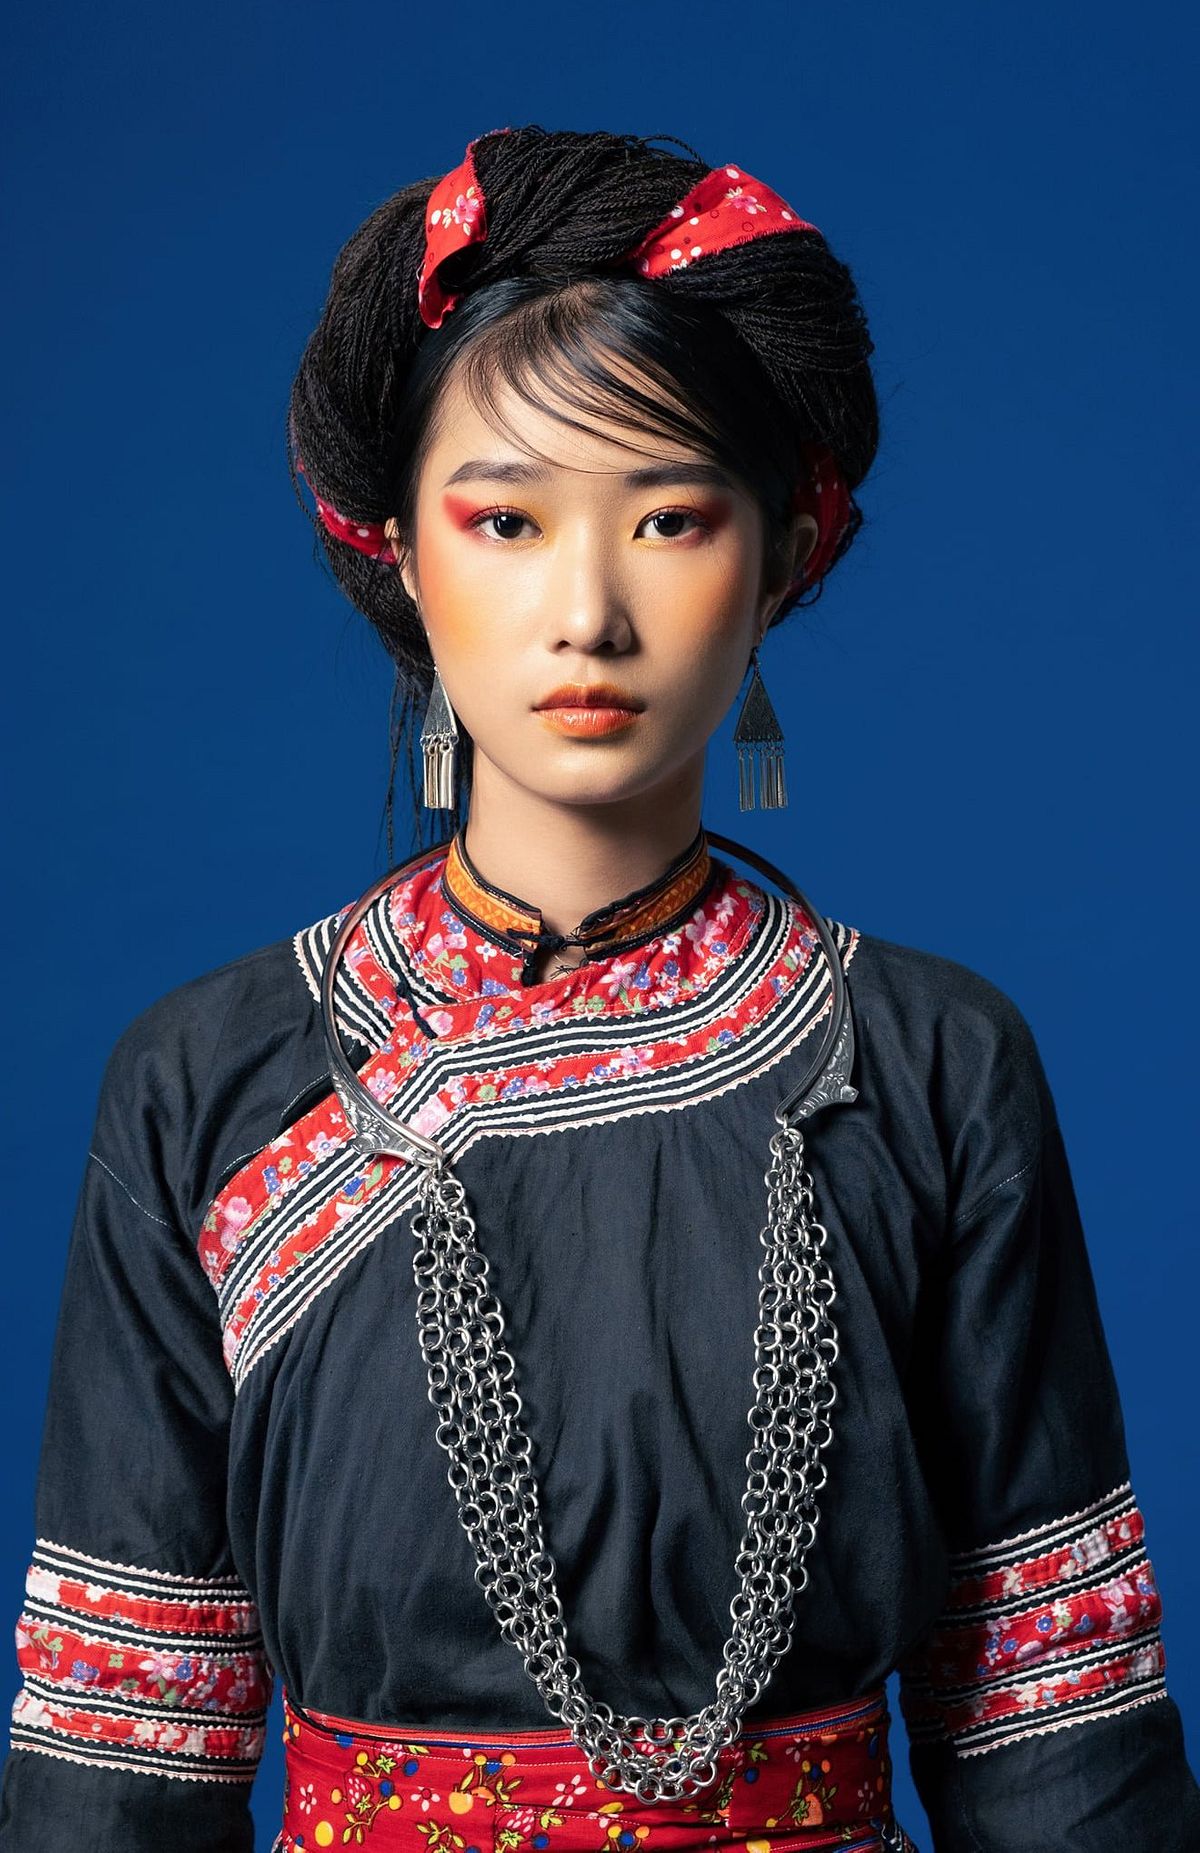 Trang phục dân tộc H\'Mông mang đậm nét văn hóa dân tộc và sự giao thoa giữa màu sắc, họa tiết truyền thống cùng hiện đại. Cùng khám phá vẻ đẹp trầm lắng và tự do của trang phục đặc trưng này.